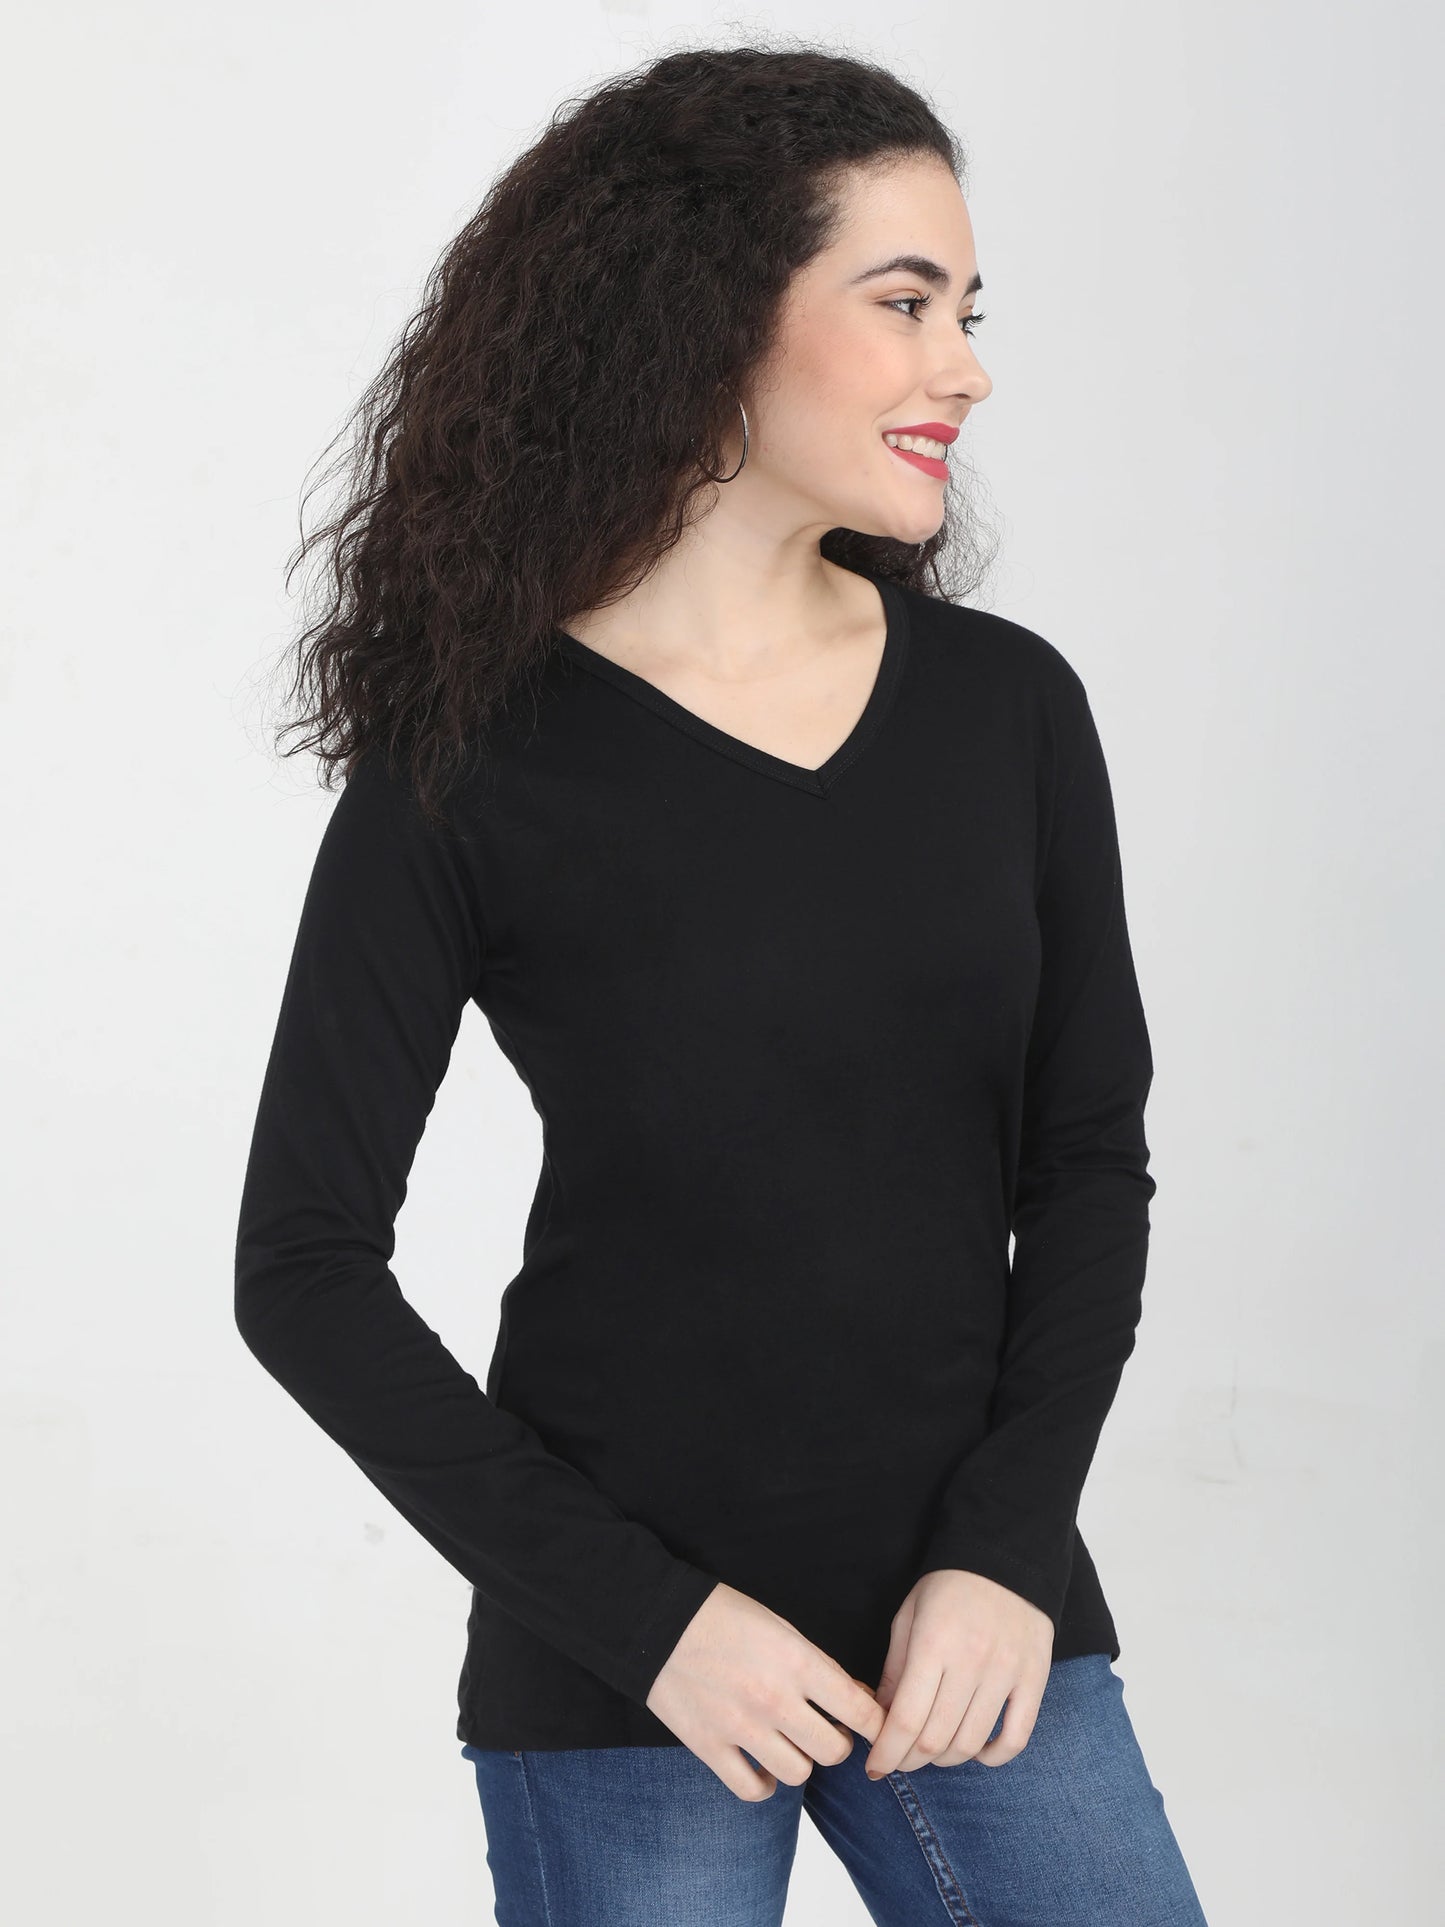 Women's Cotton Plain V Neck Full Sleeve Black Color T-Shirt